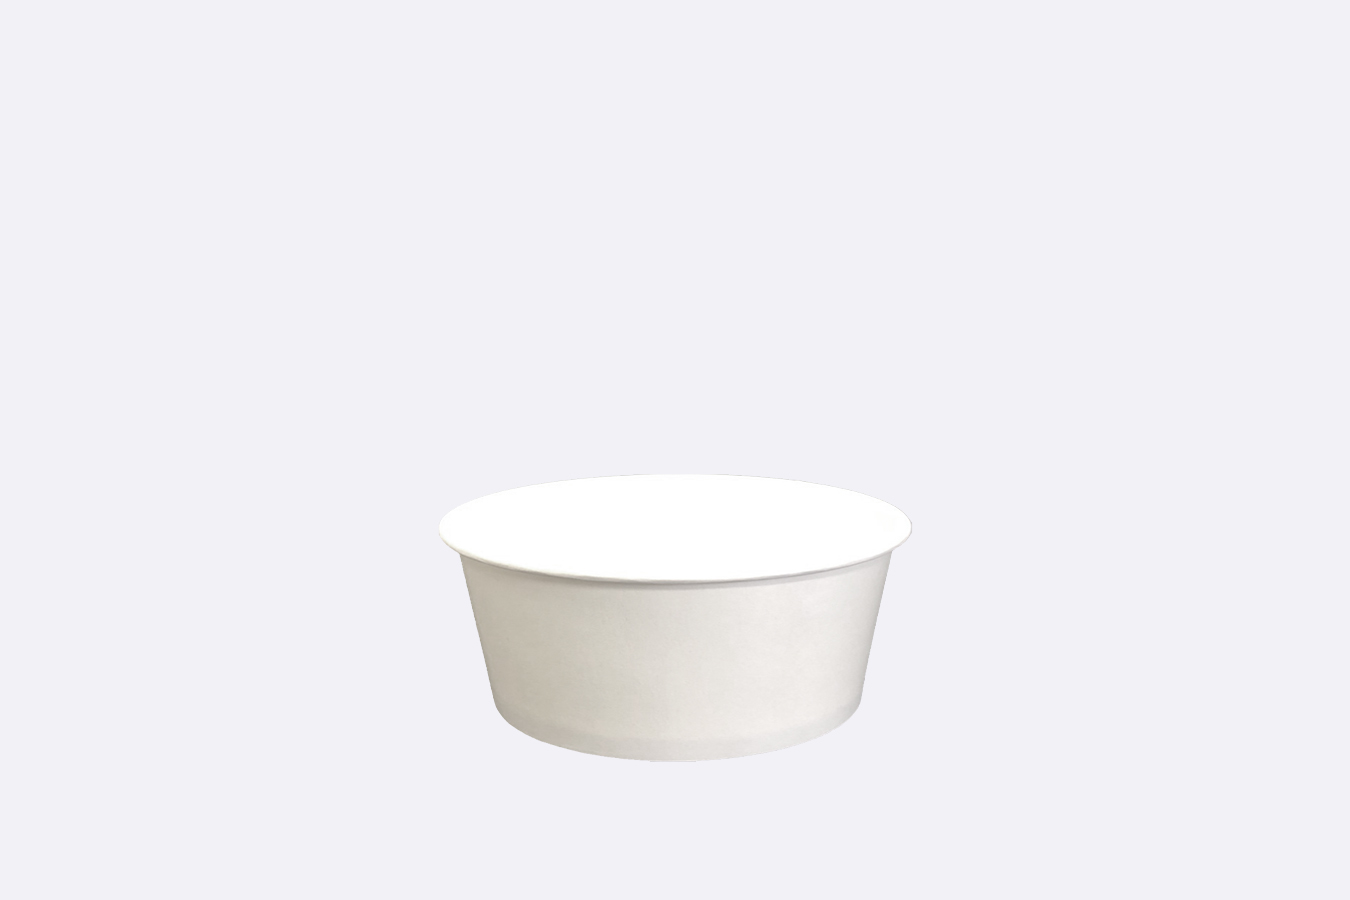 Ecopax Paper Soup Cup 4.5 oz white color